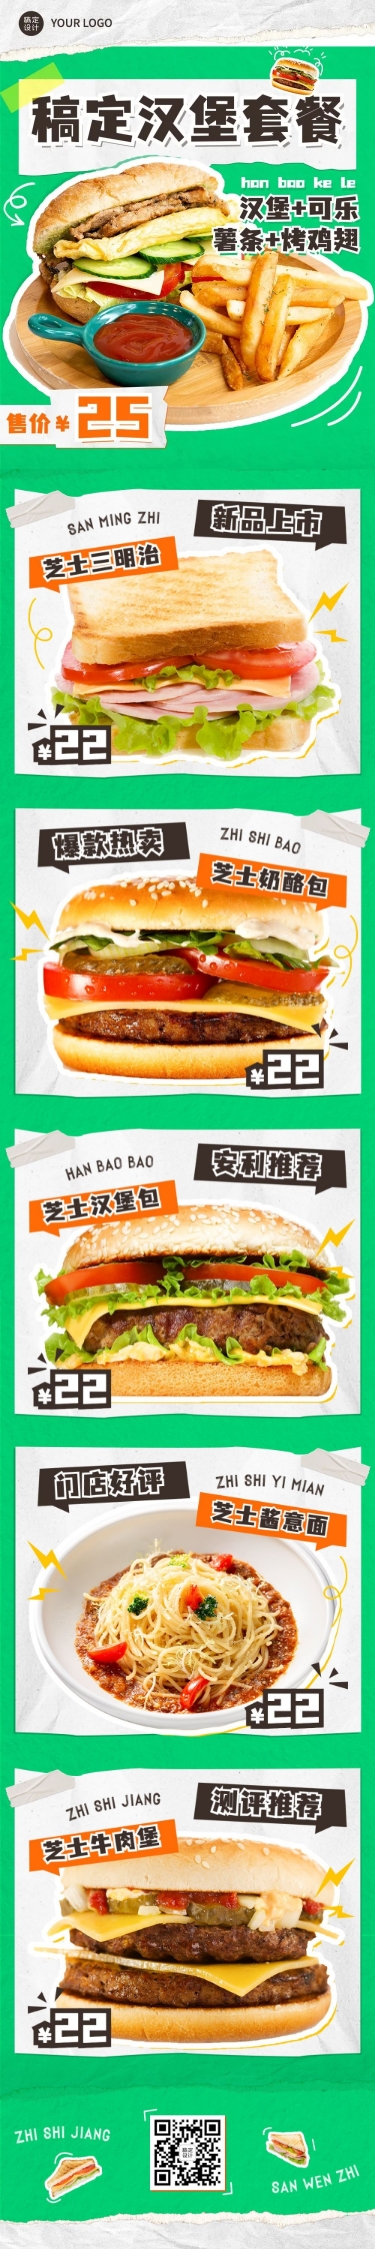 餐饮汉堡鸡腿可乐快餐产品营销文章长图预览效果